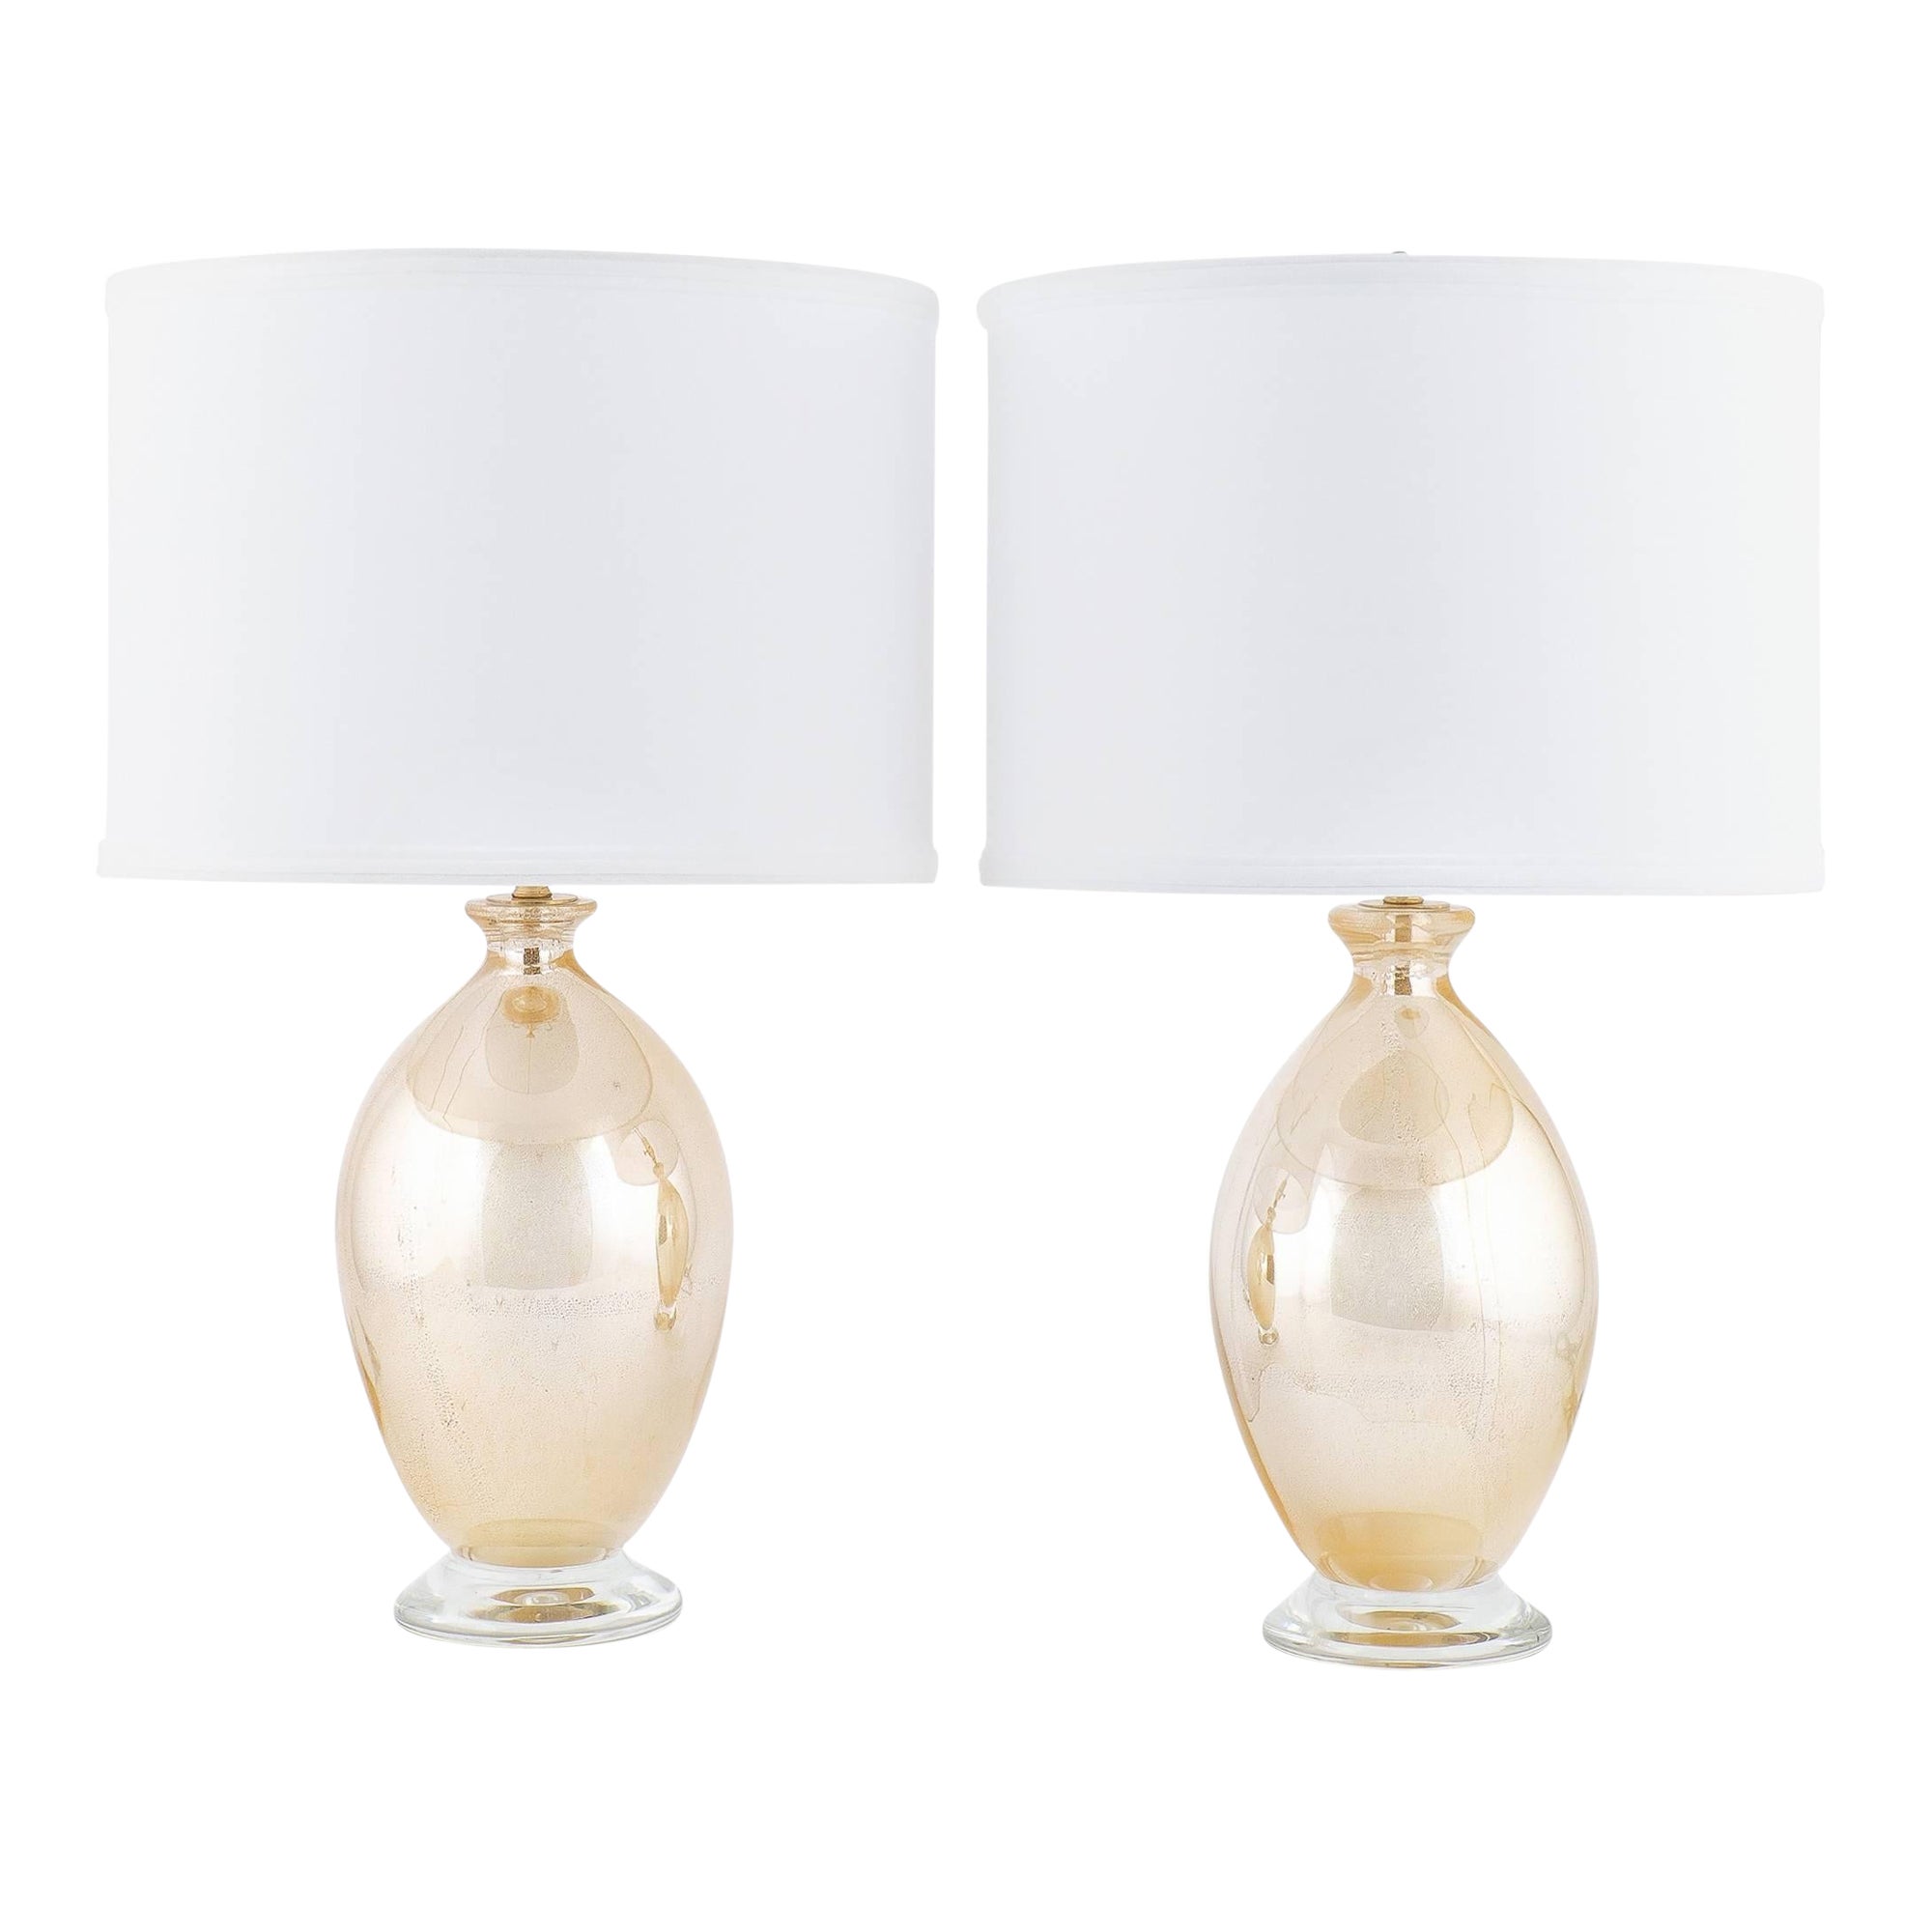 Murano "Avventurina" Mirrored Glass Table Lamps